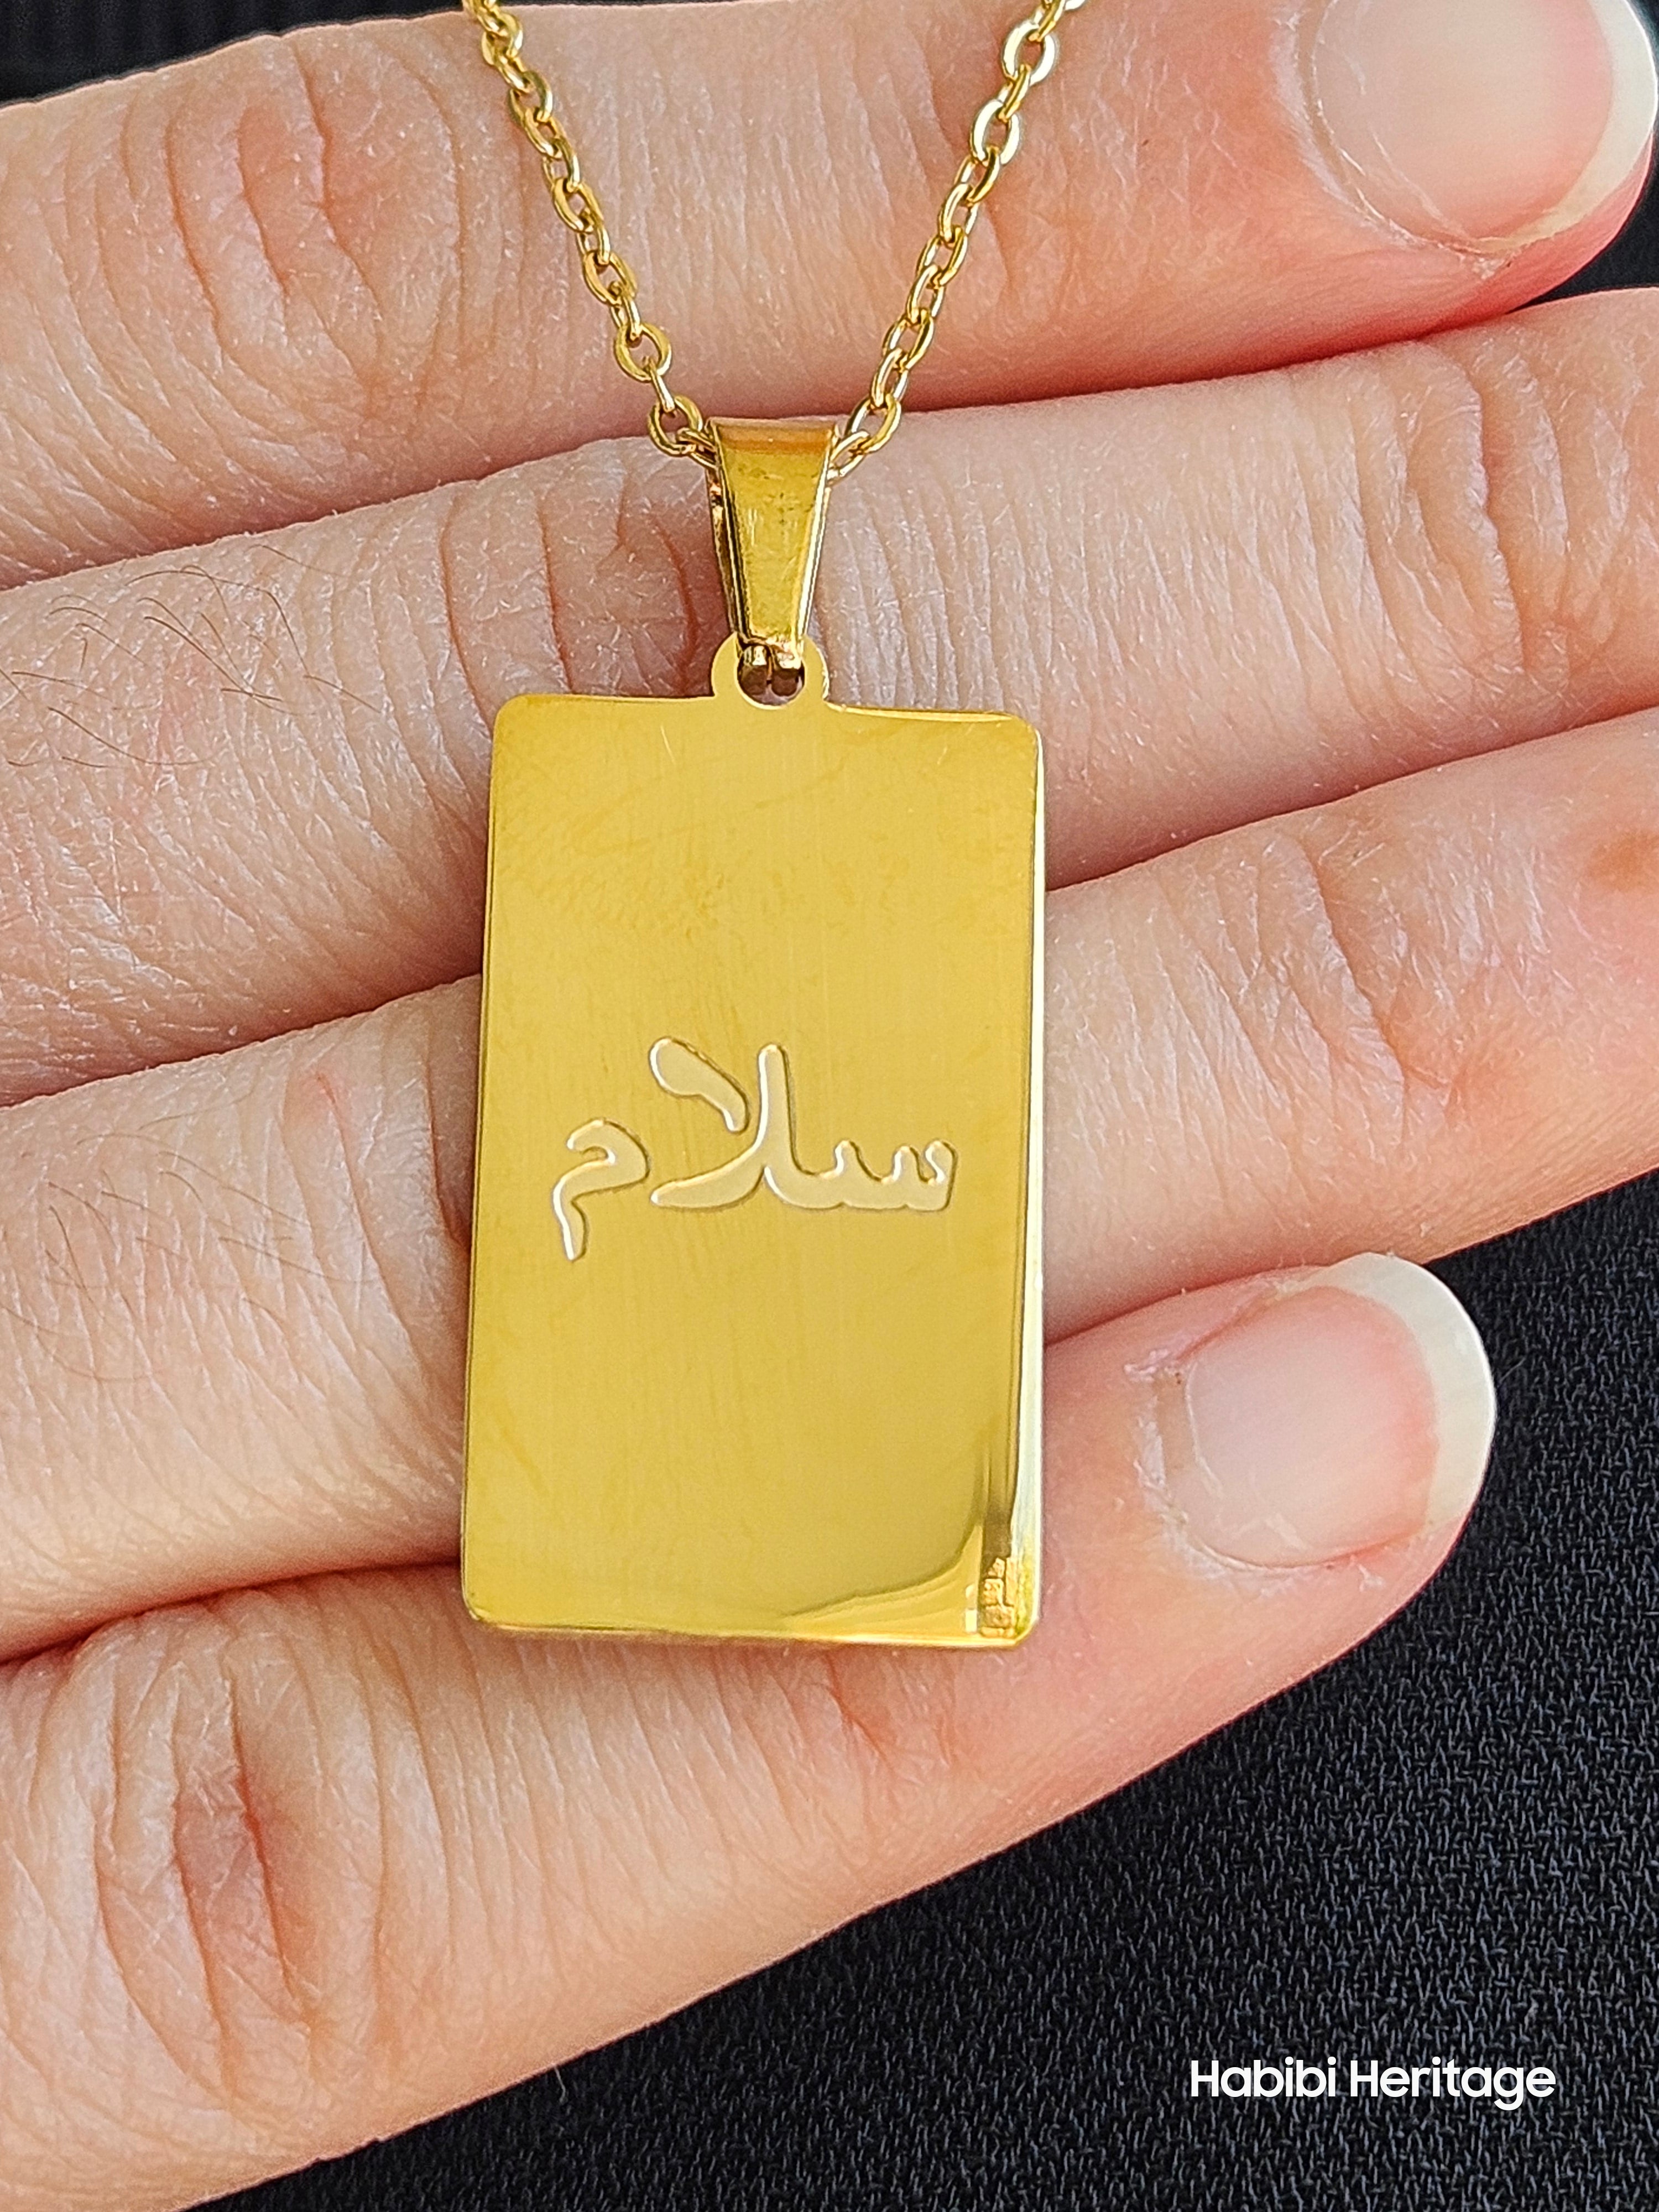 Salaam (Peace) Necklace - Habibi Heritage